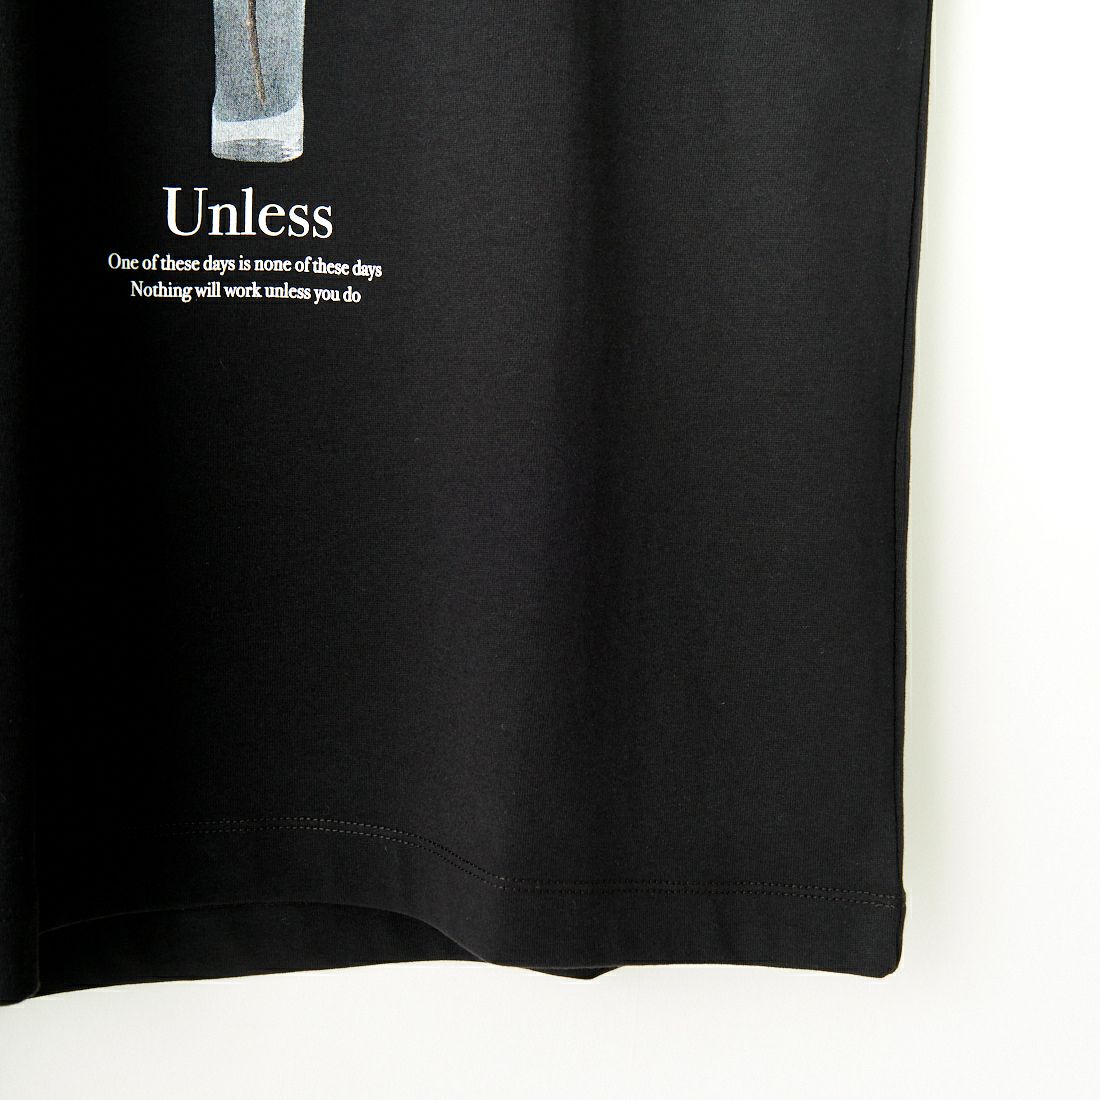 SLICK [スリック] レギュラーフィットプリントTシャツ UNLESS [5255856] 700 BLACK